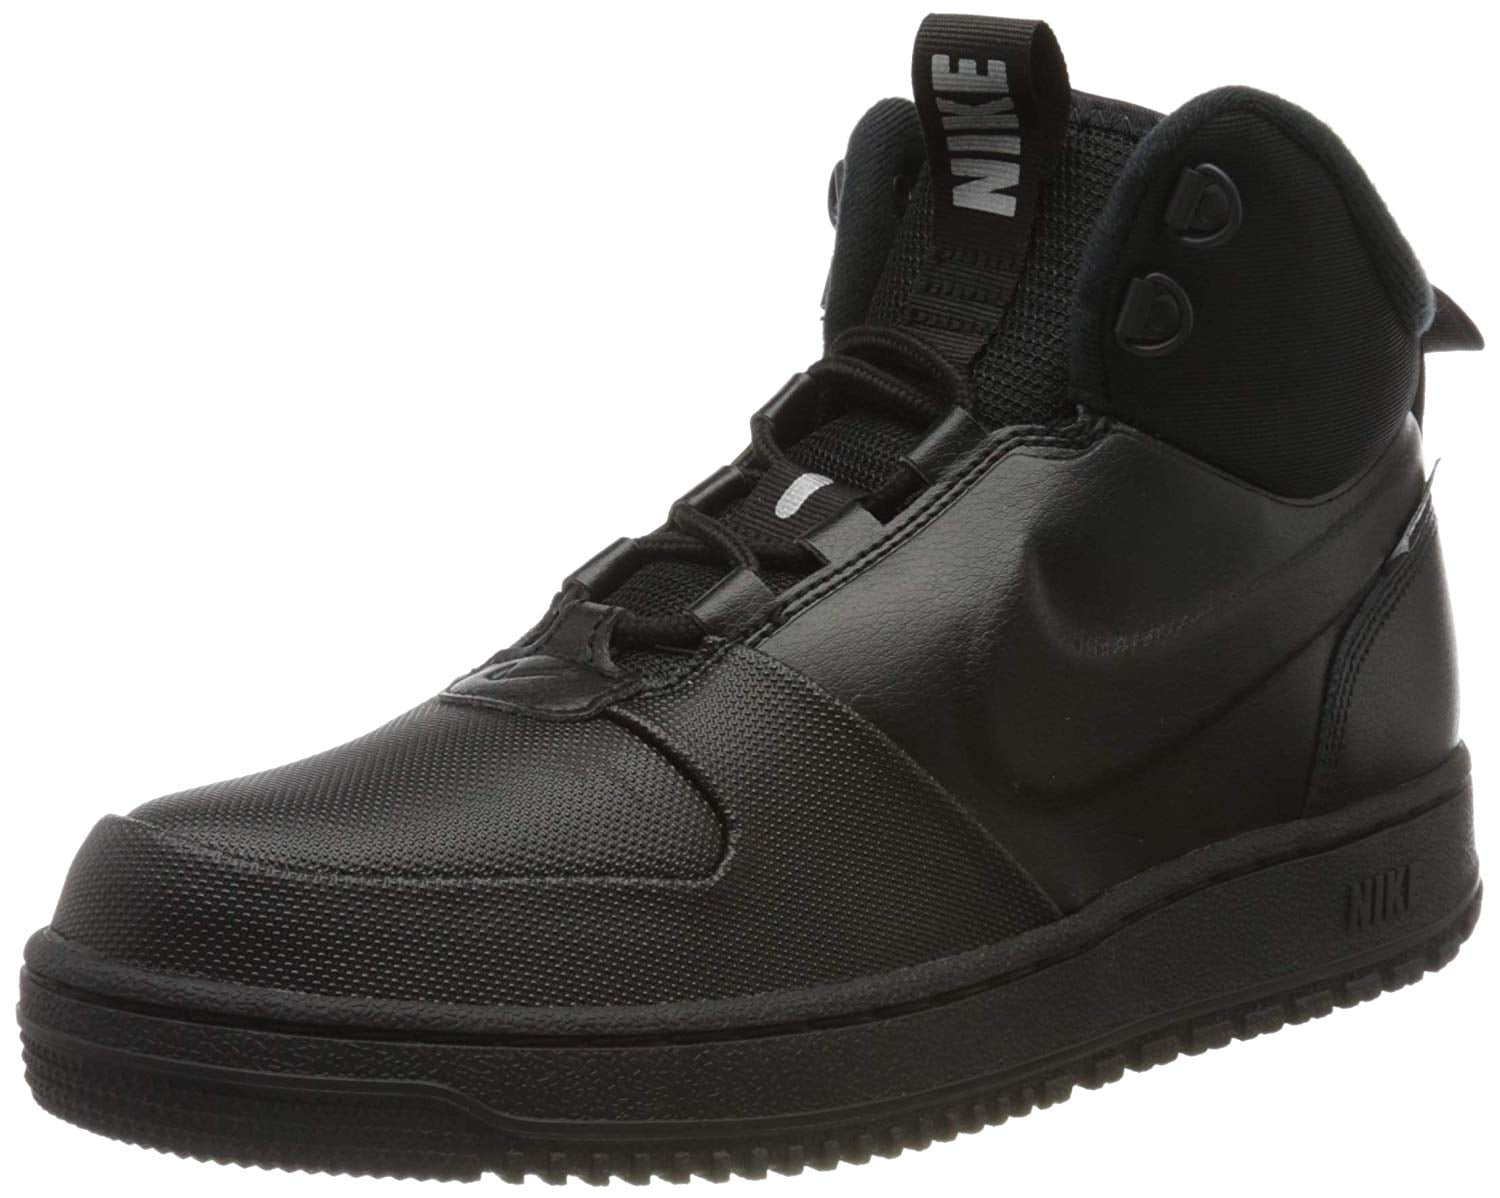 Nike Men's Path WNTR Sneaker Boots (8.5 